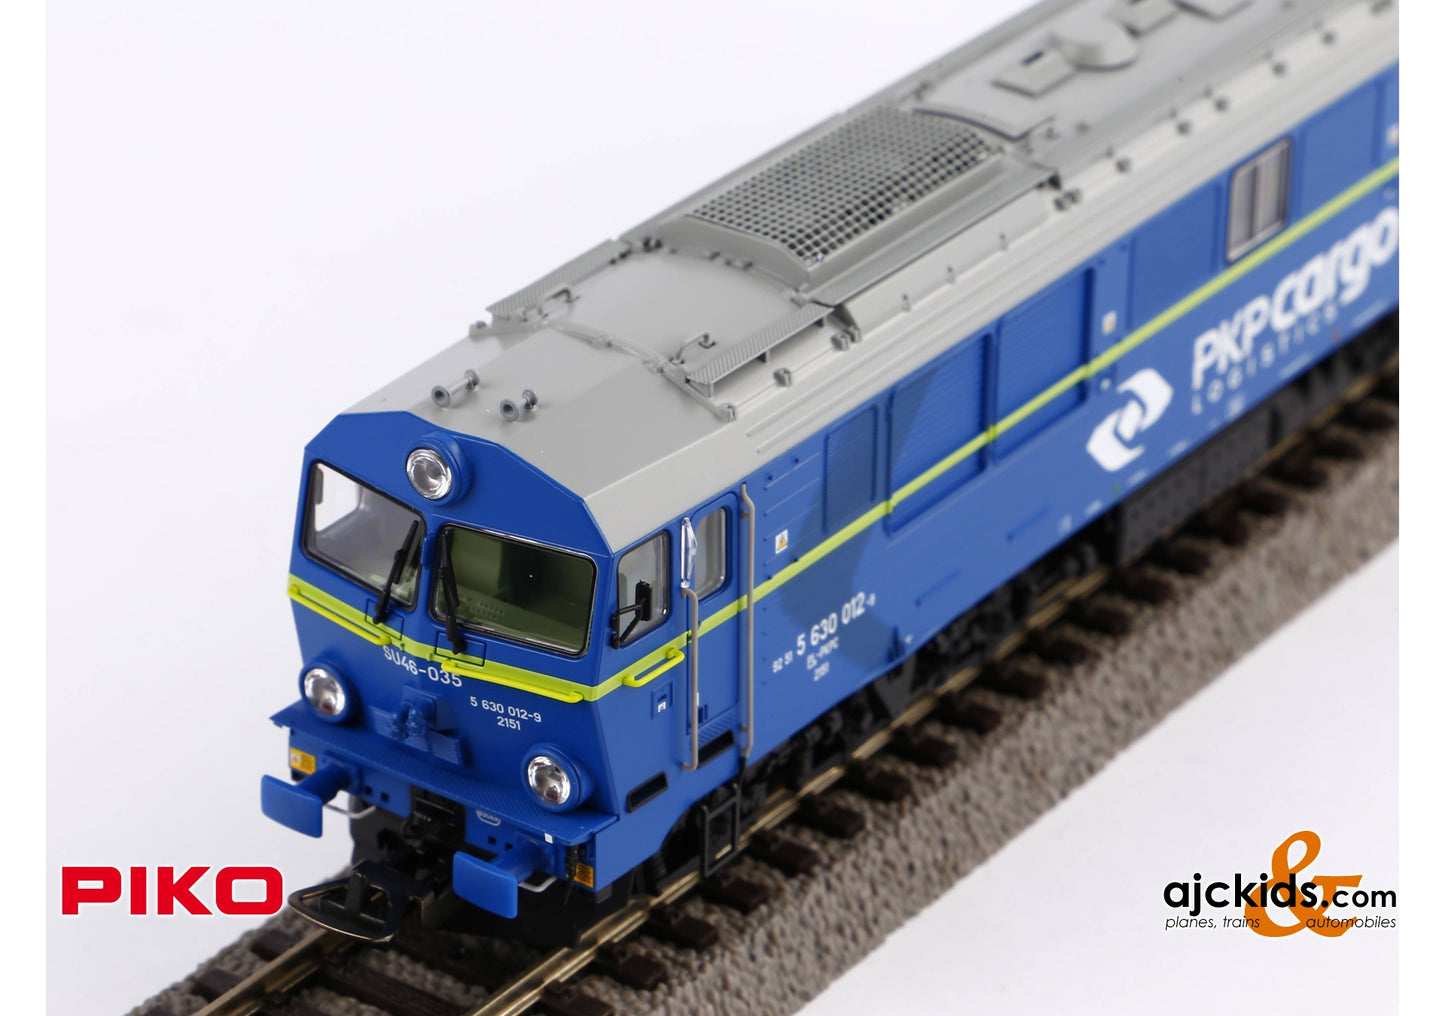 Piko 52869 - SU46 Diesel Locomotive PKP Cargo VI Sound